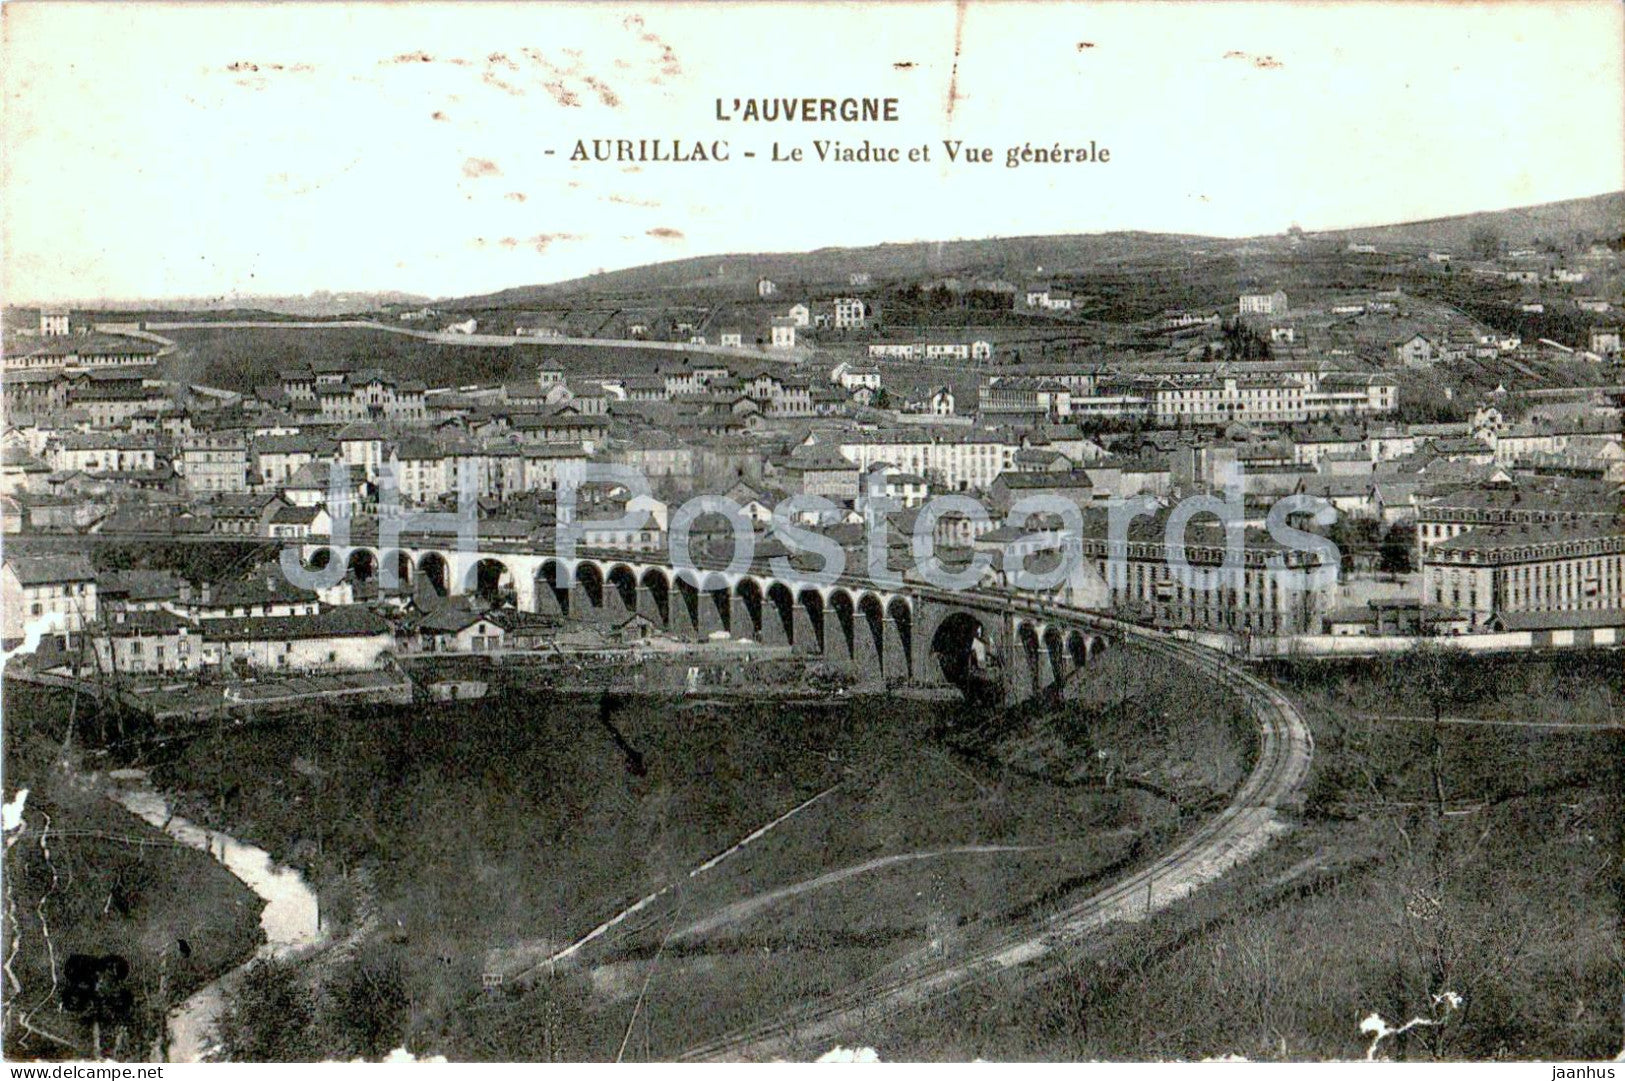 L'Auvergne - Aurillac - Le Viaduc et Vue generale - old postcard - 1916 - France - used - JH Postcards